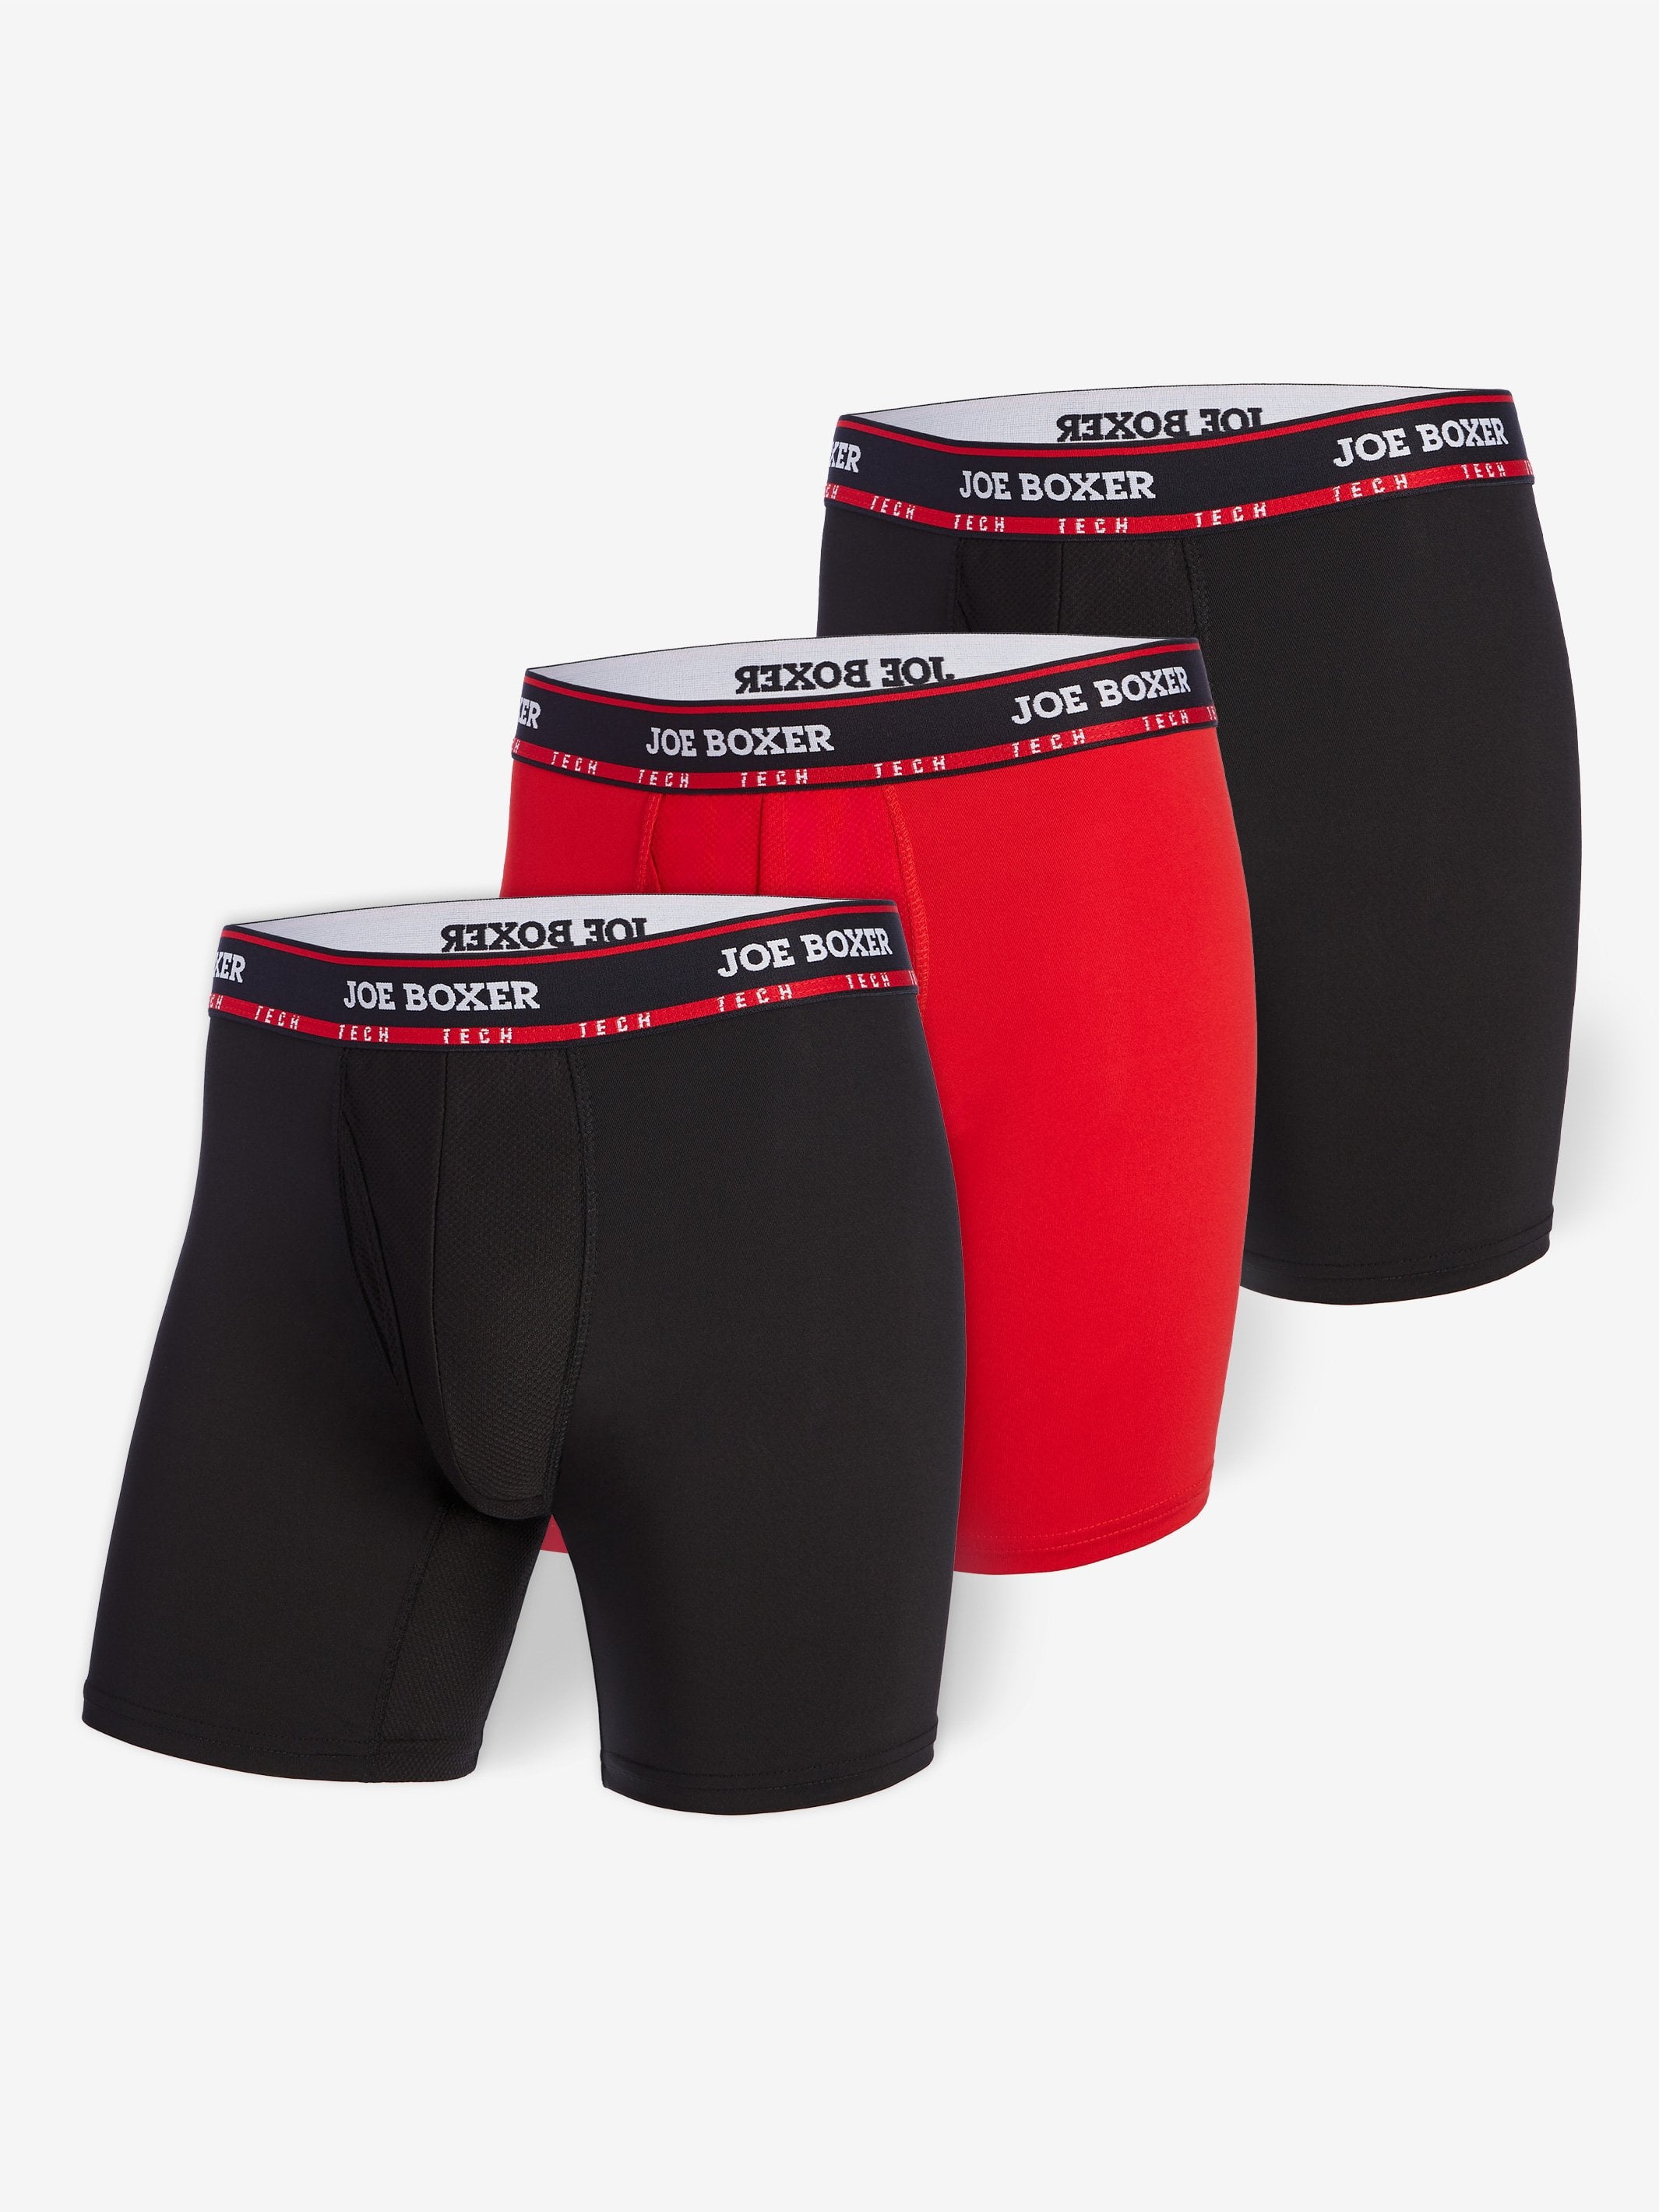 jovati Mens Briefs Underwear Mens Underpants Cotton Sweat Absorbing  Breathable Sports Underwear Briefs